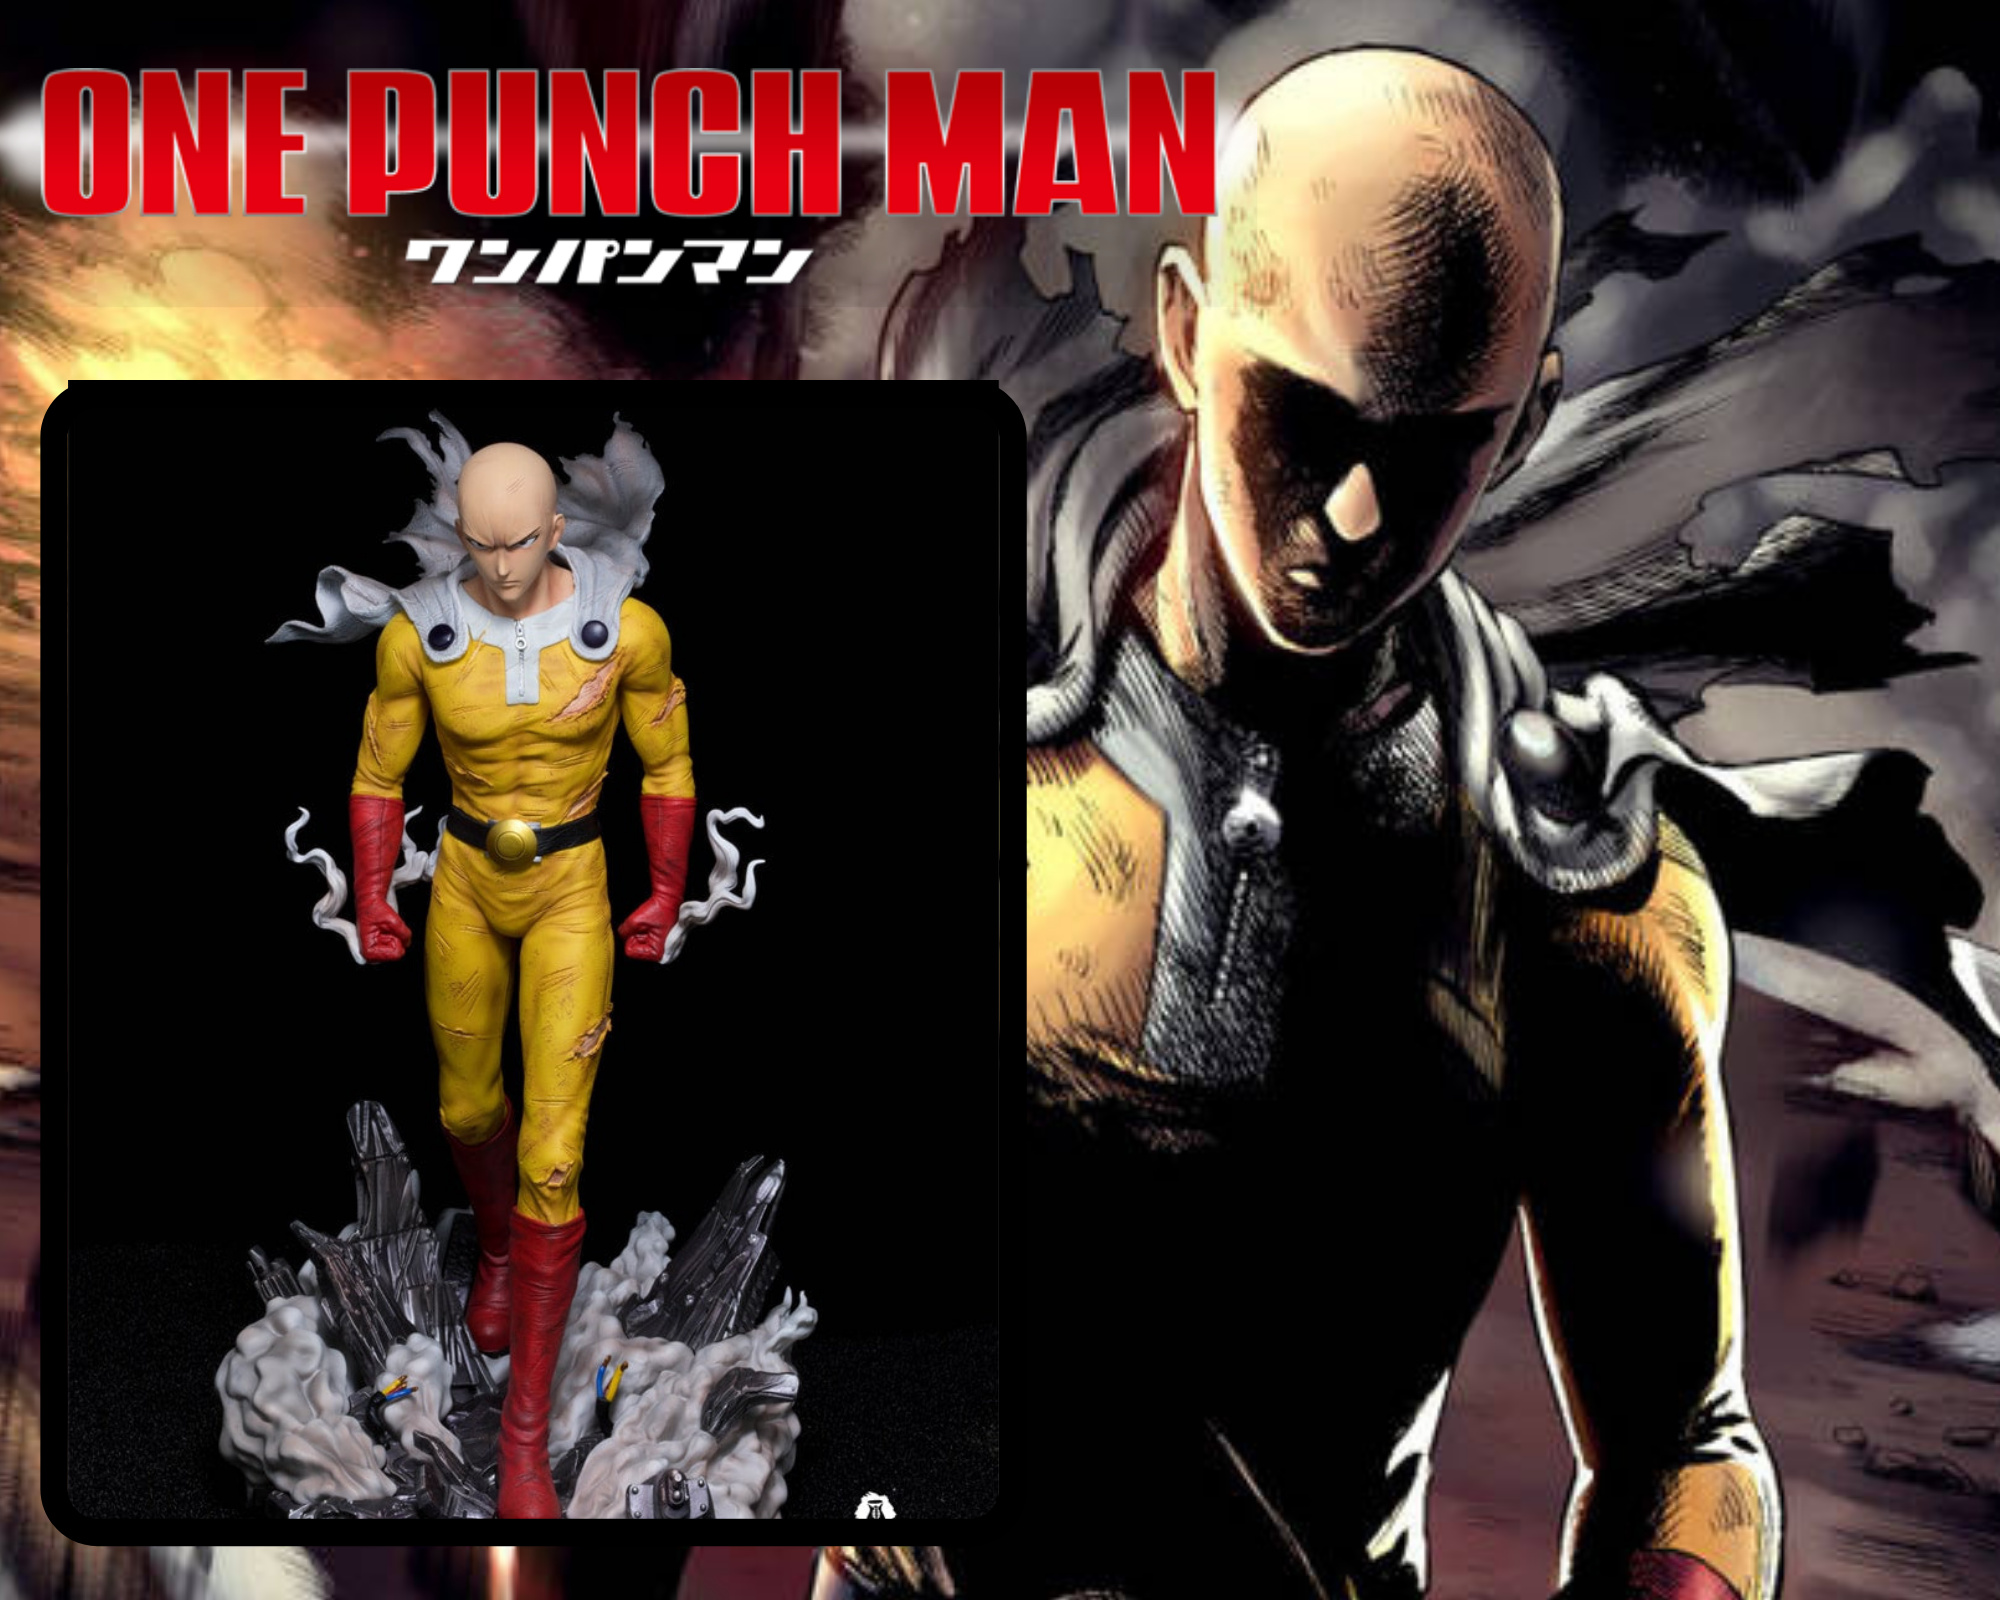 Saitama - One Punch Man 30cm